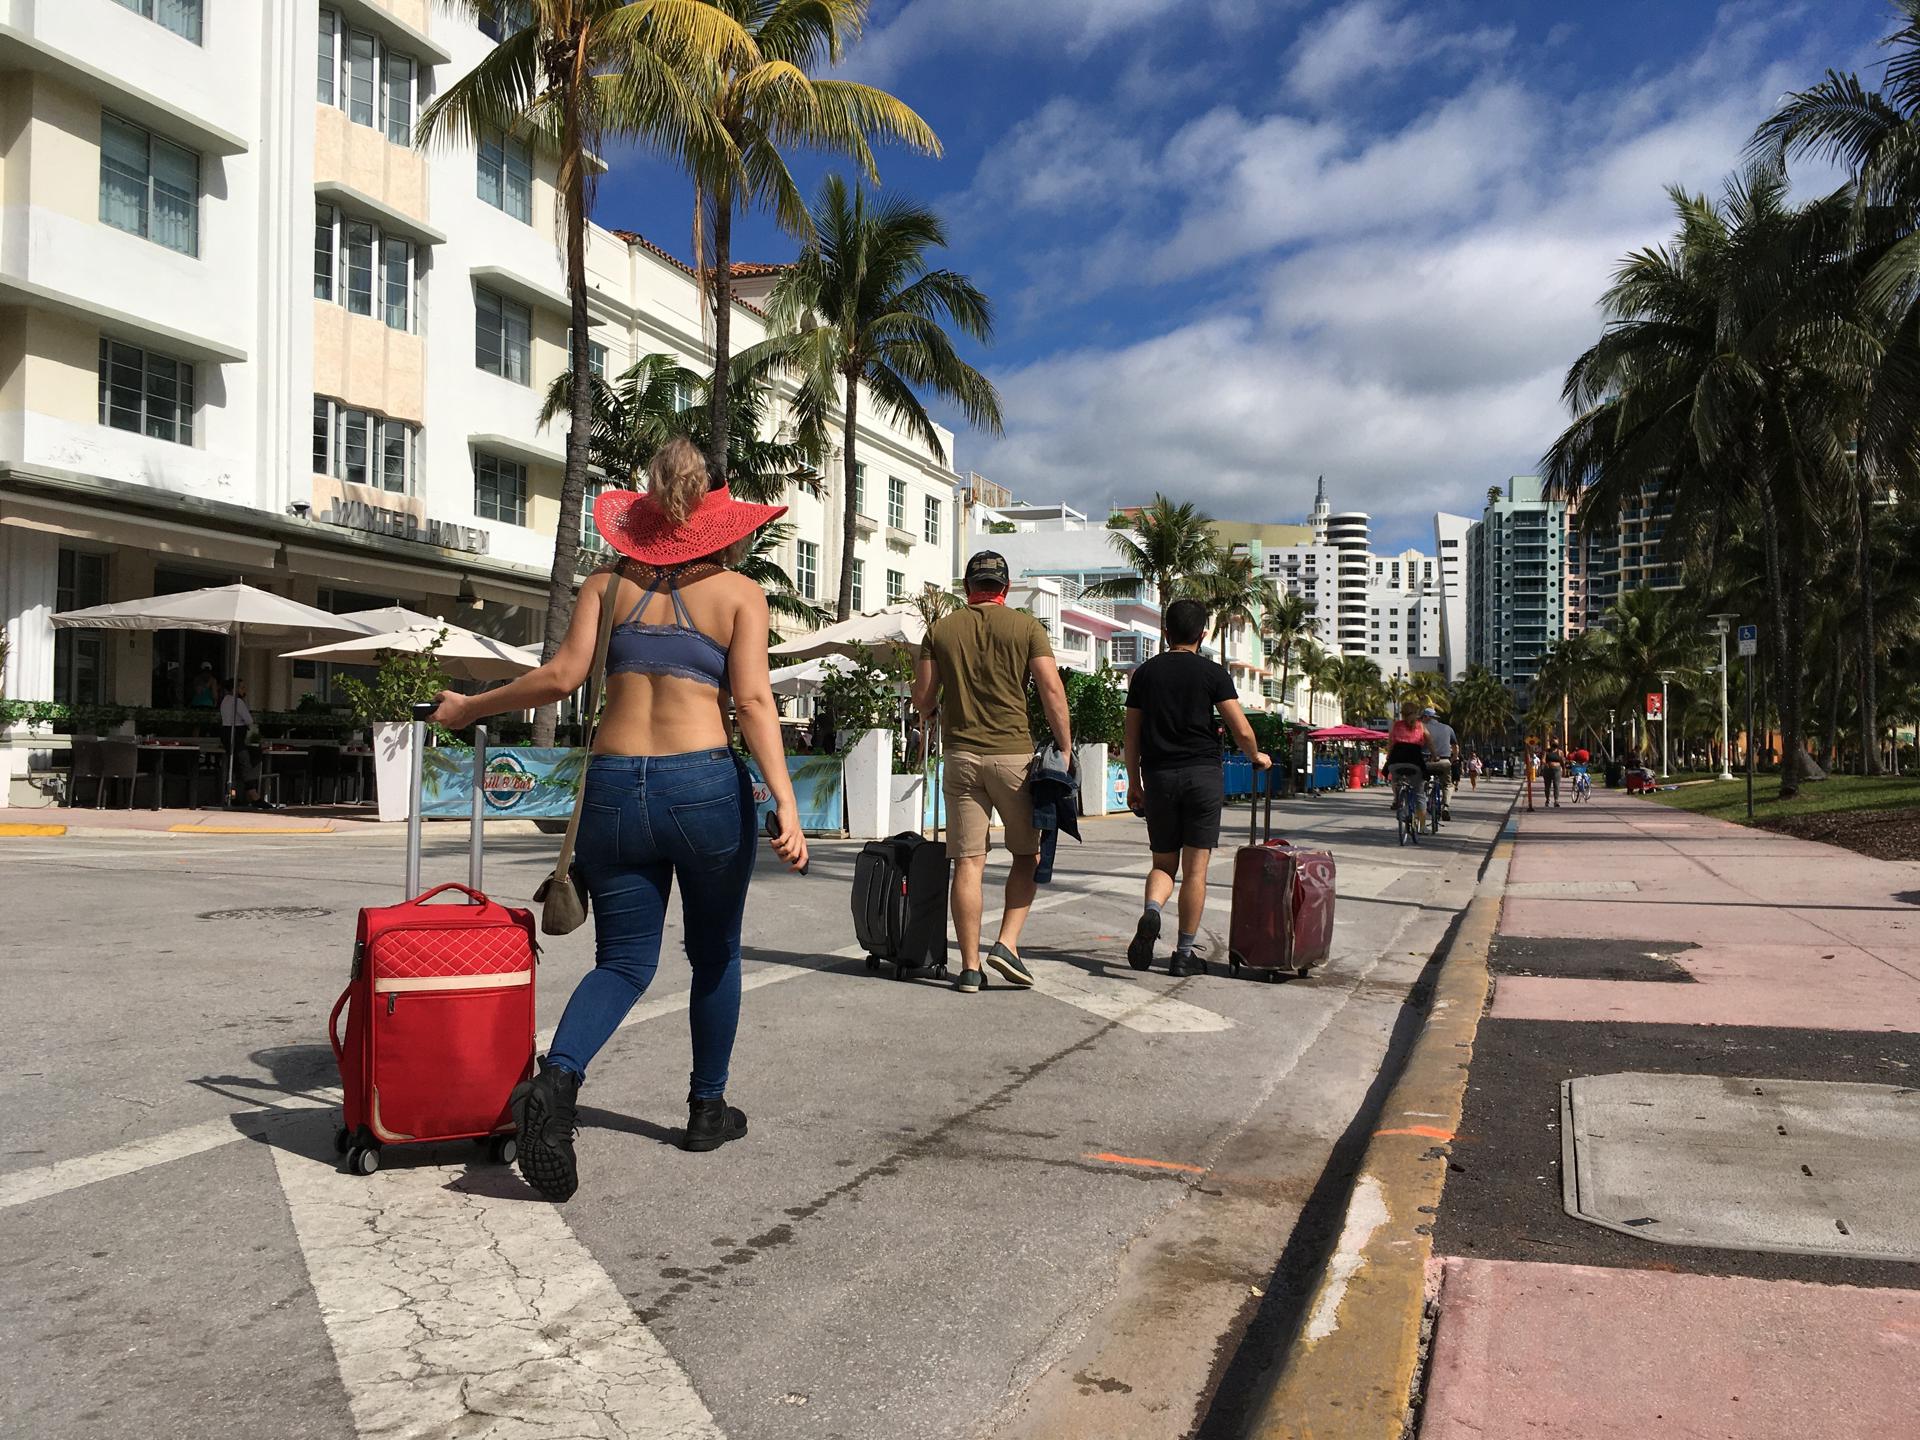 Varias personas caminan con su equipaje a través de la avenida Ocean Drive, en Miami Beach, Florida (Estados Unidos). Fotografía de archivo. EFE/Ivonne Malaver
